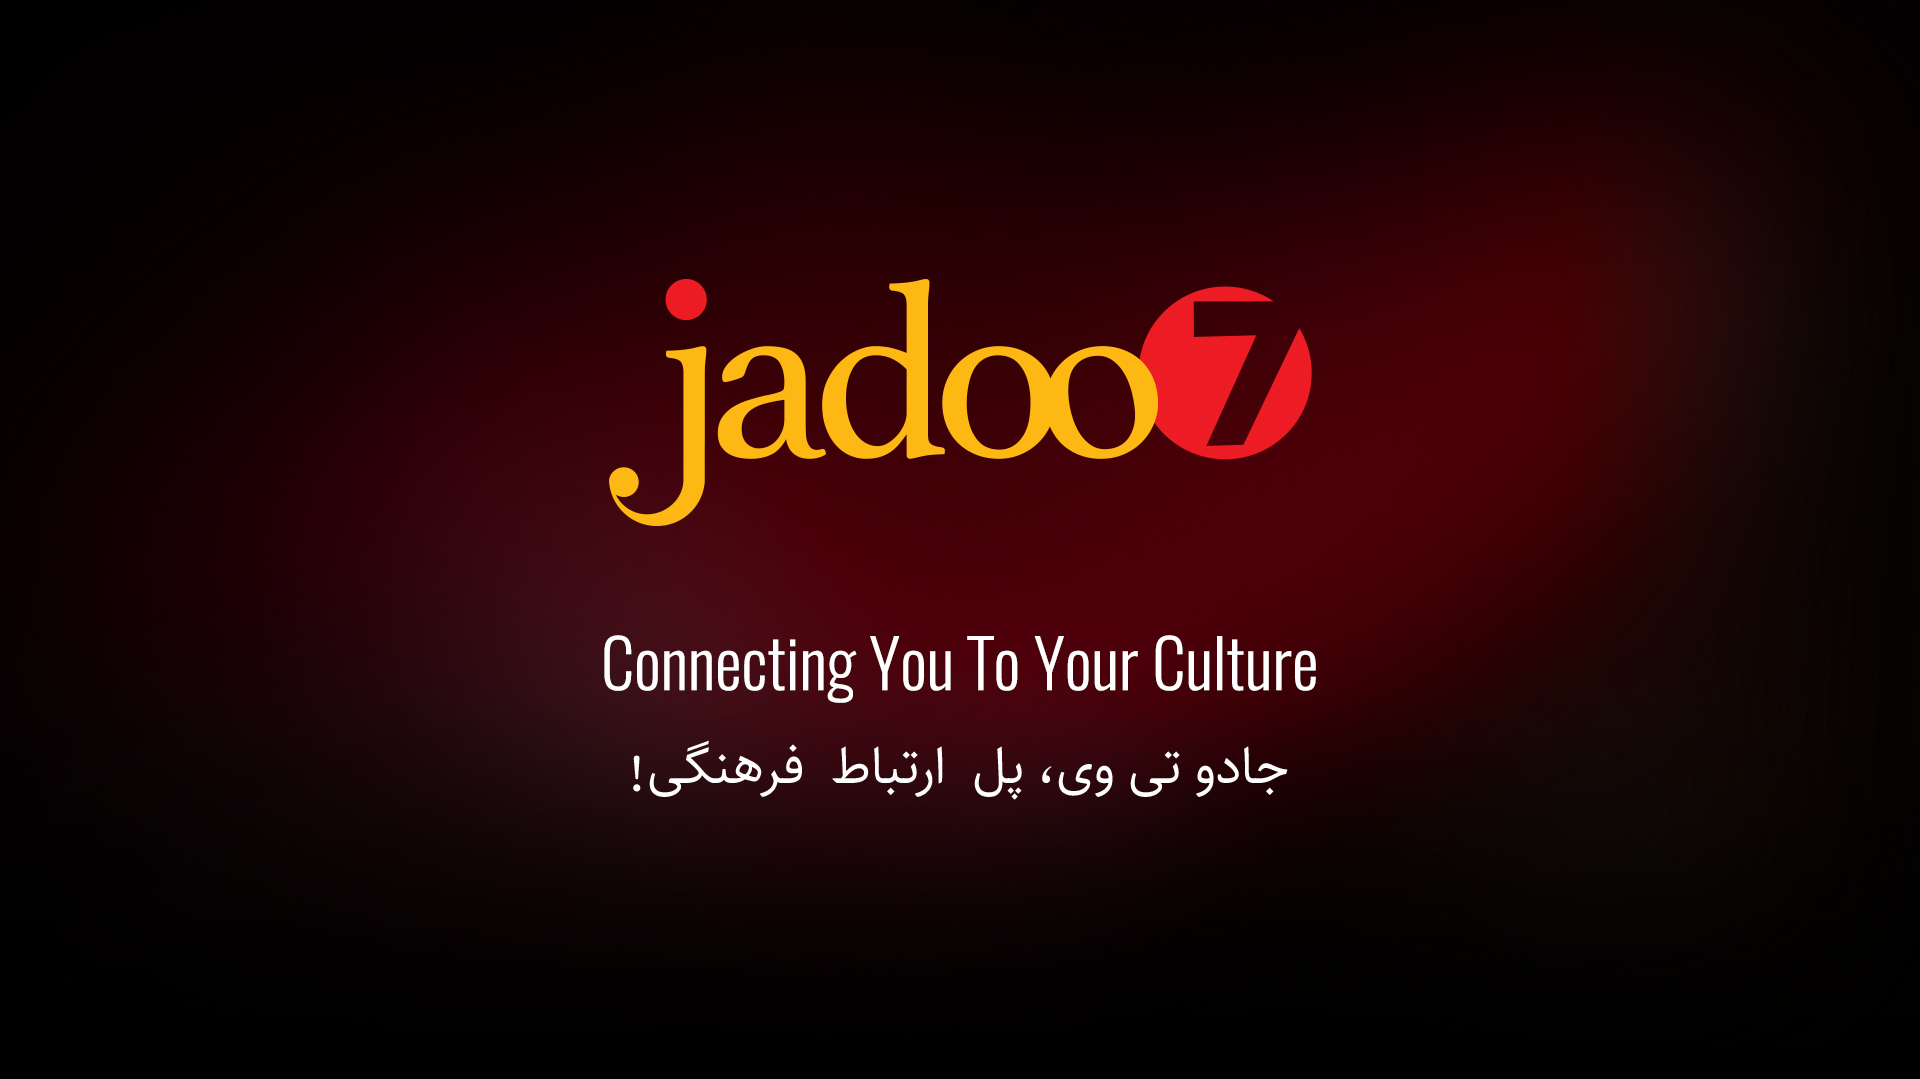 Jadoo Android Launcher Wallpaper And Boot Image Jadootv